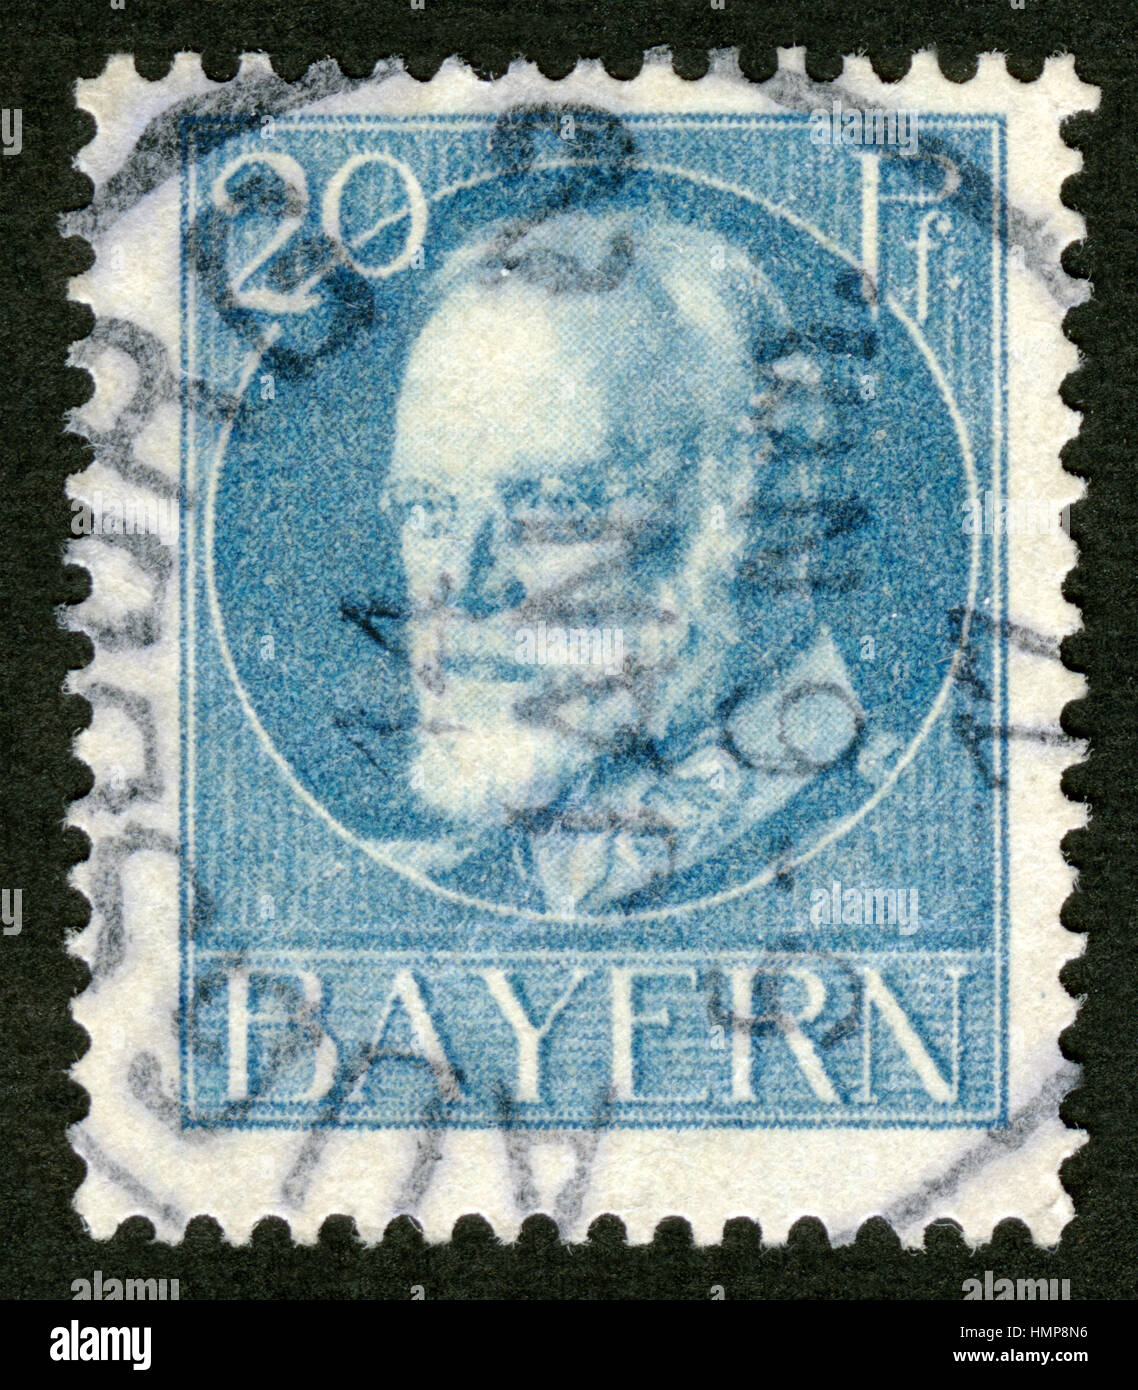 Bayern Postage Stamp, retrato el Rey Ludwig III, Año 1920 Foto de stock